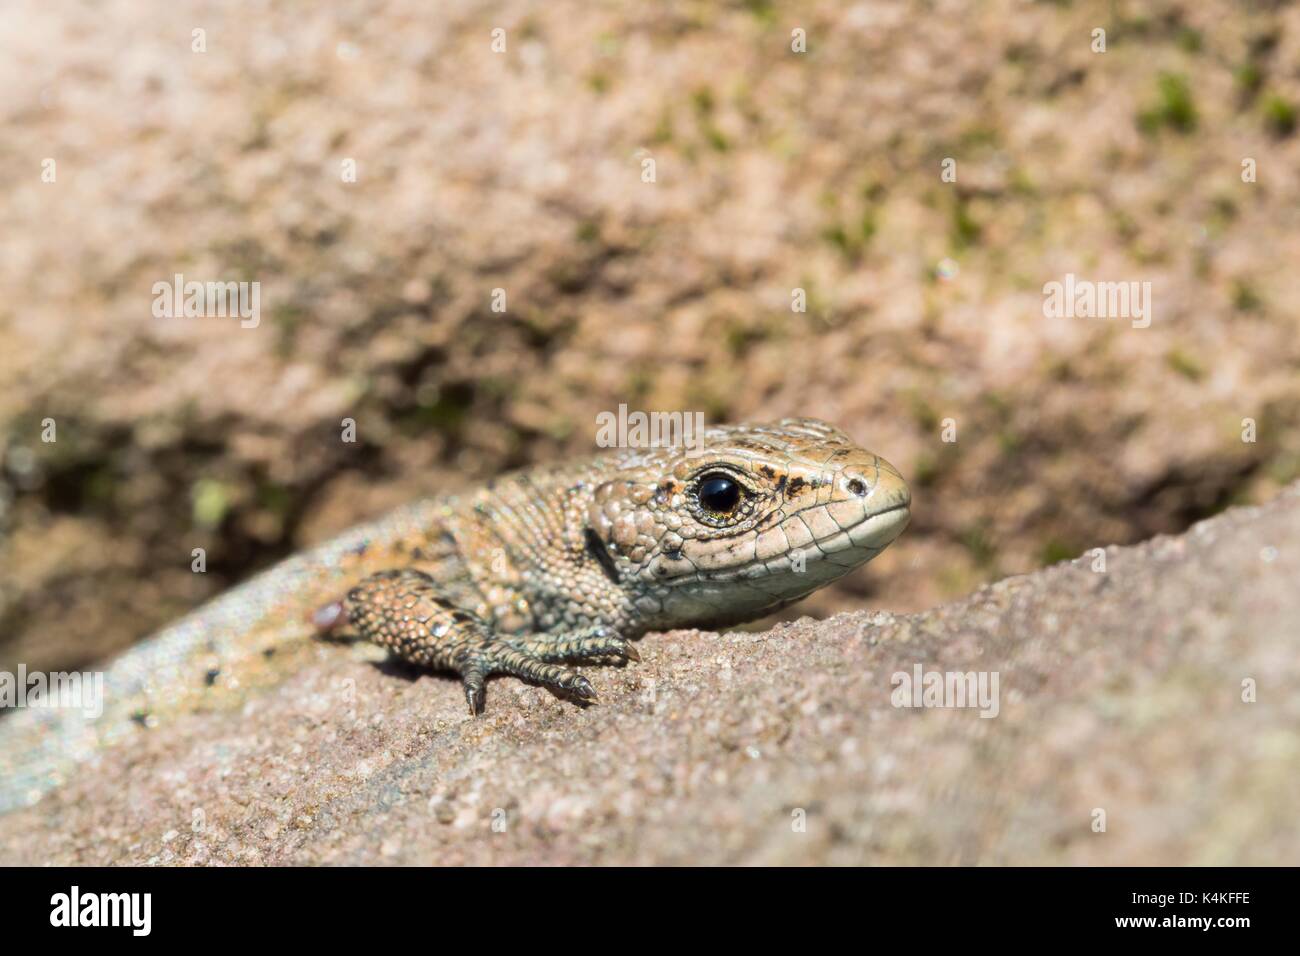 Viviparous lizard (Lacerta vivipara) on stone, portrait, Hesse, Germany Stock Photo